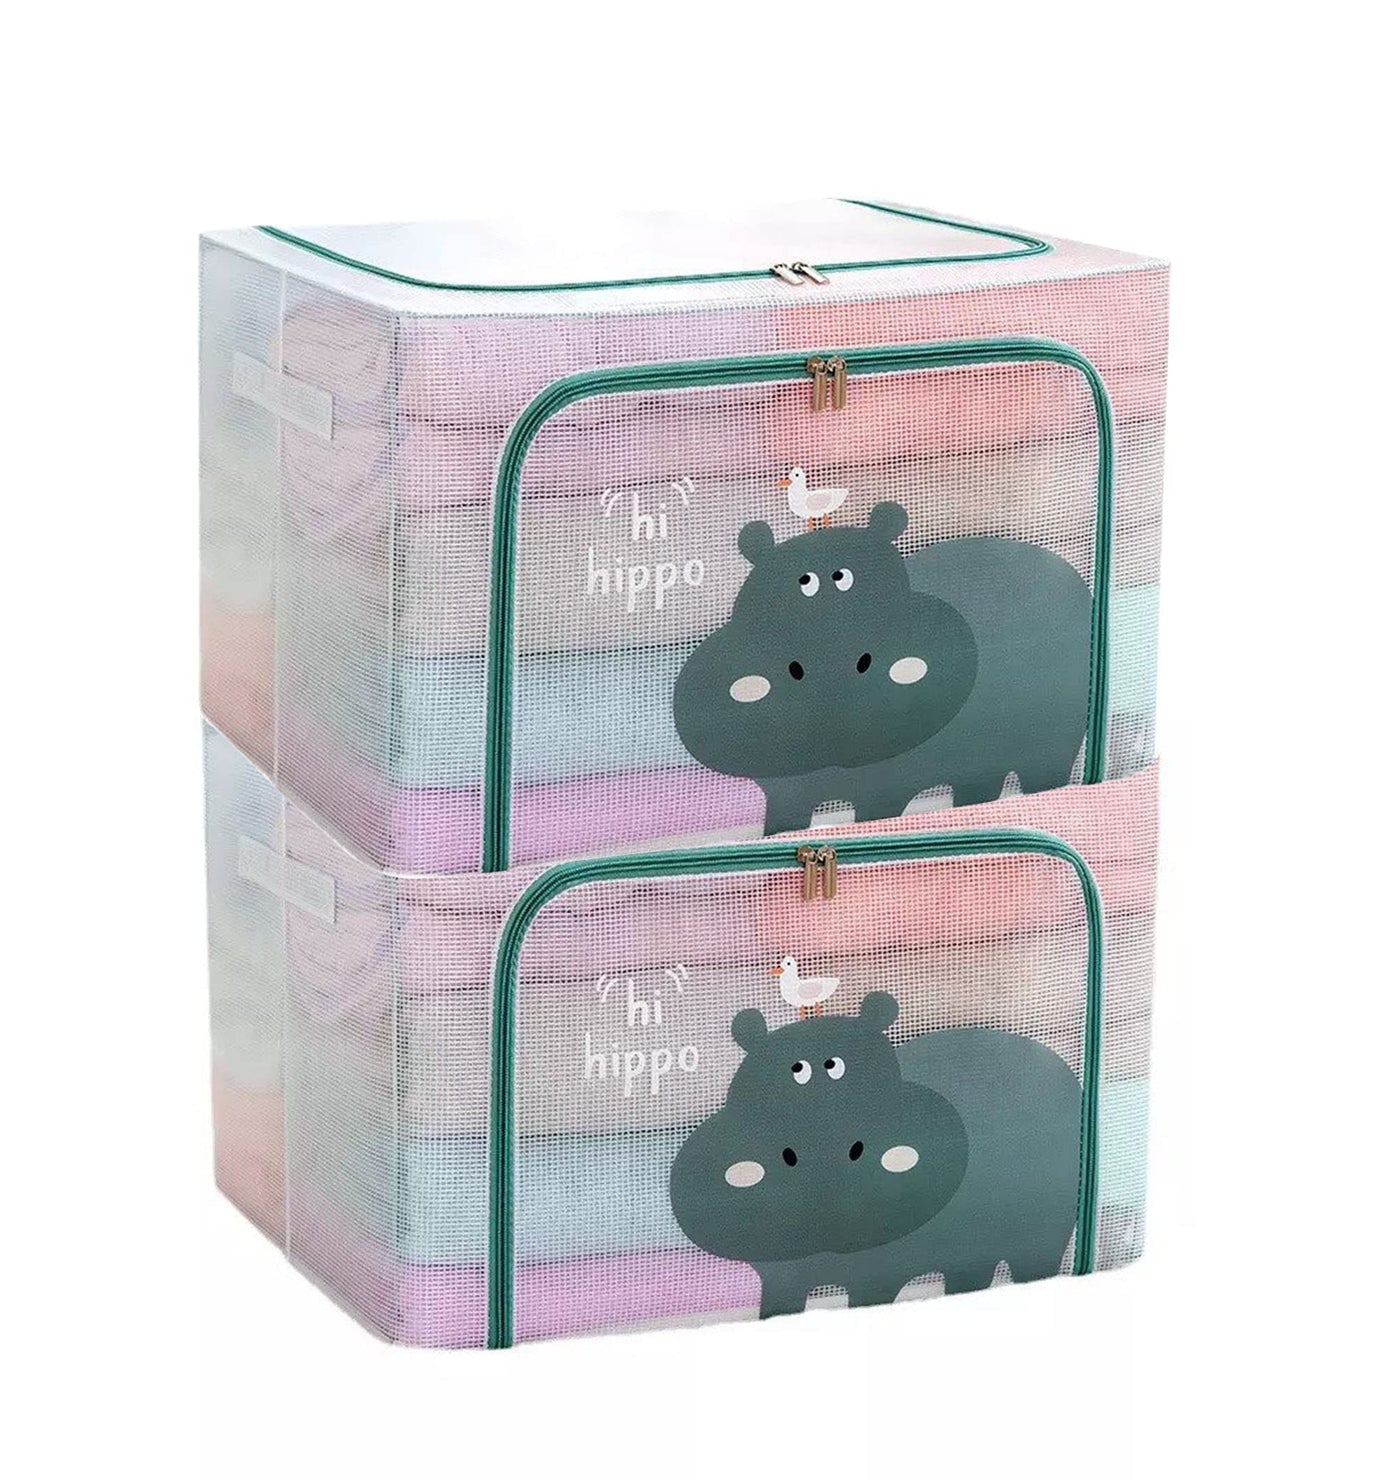 Large Capacity Transparent Foldable Clothing Storage Box - Hippo